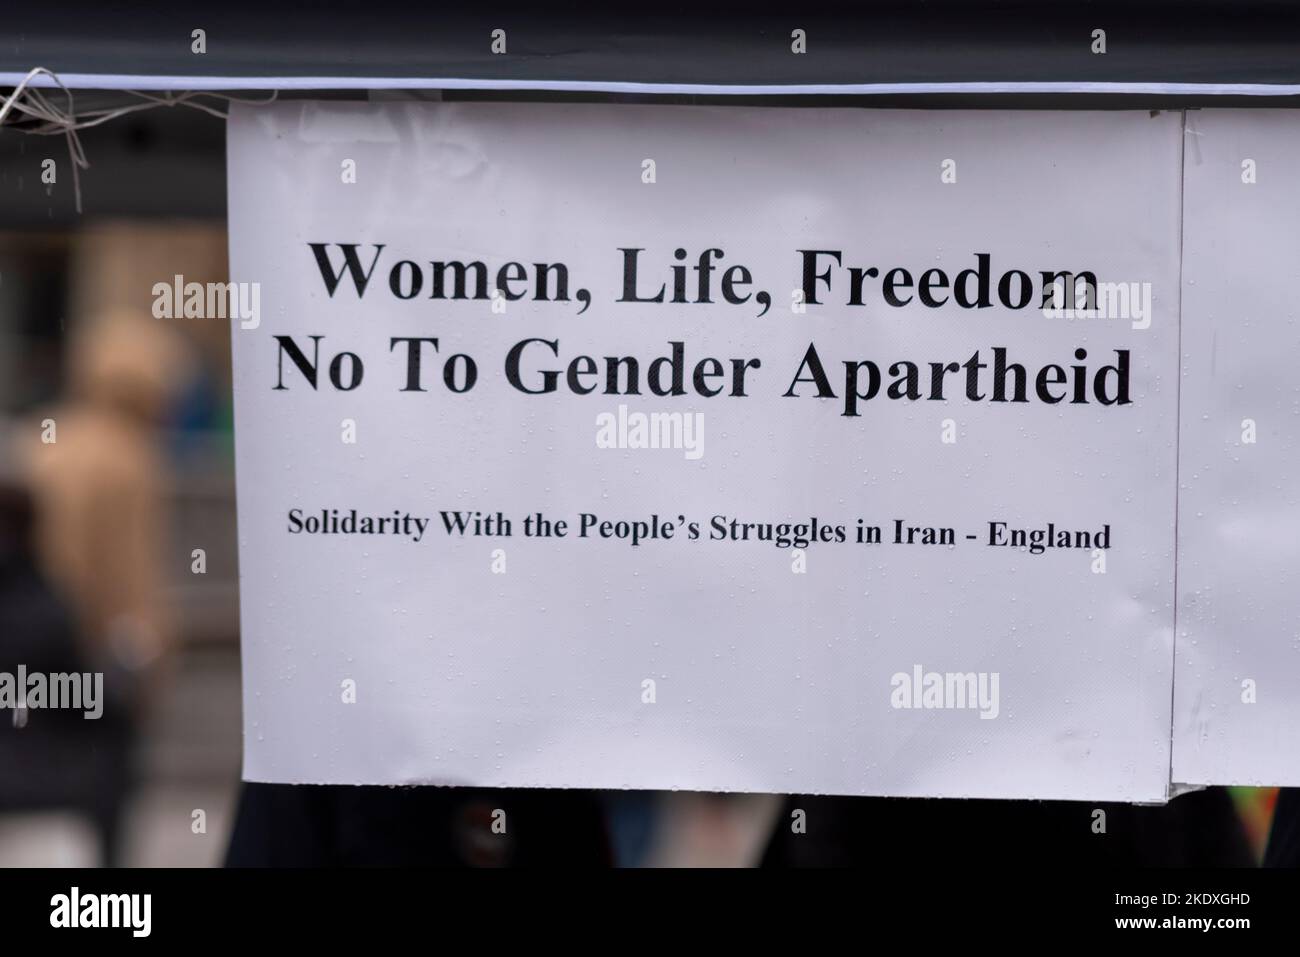 Messaggio di protesta contro il regime iraniano. Donne, vita, libertà, no all'apartheid di genere. Solidarietà con le lotte del popolo in Iran - Inghilterra Foto Stock